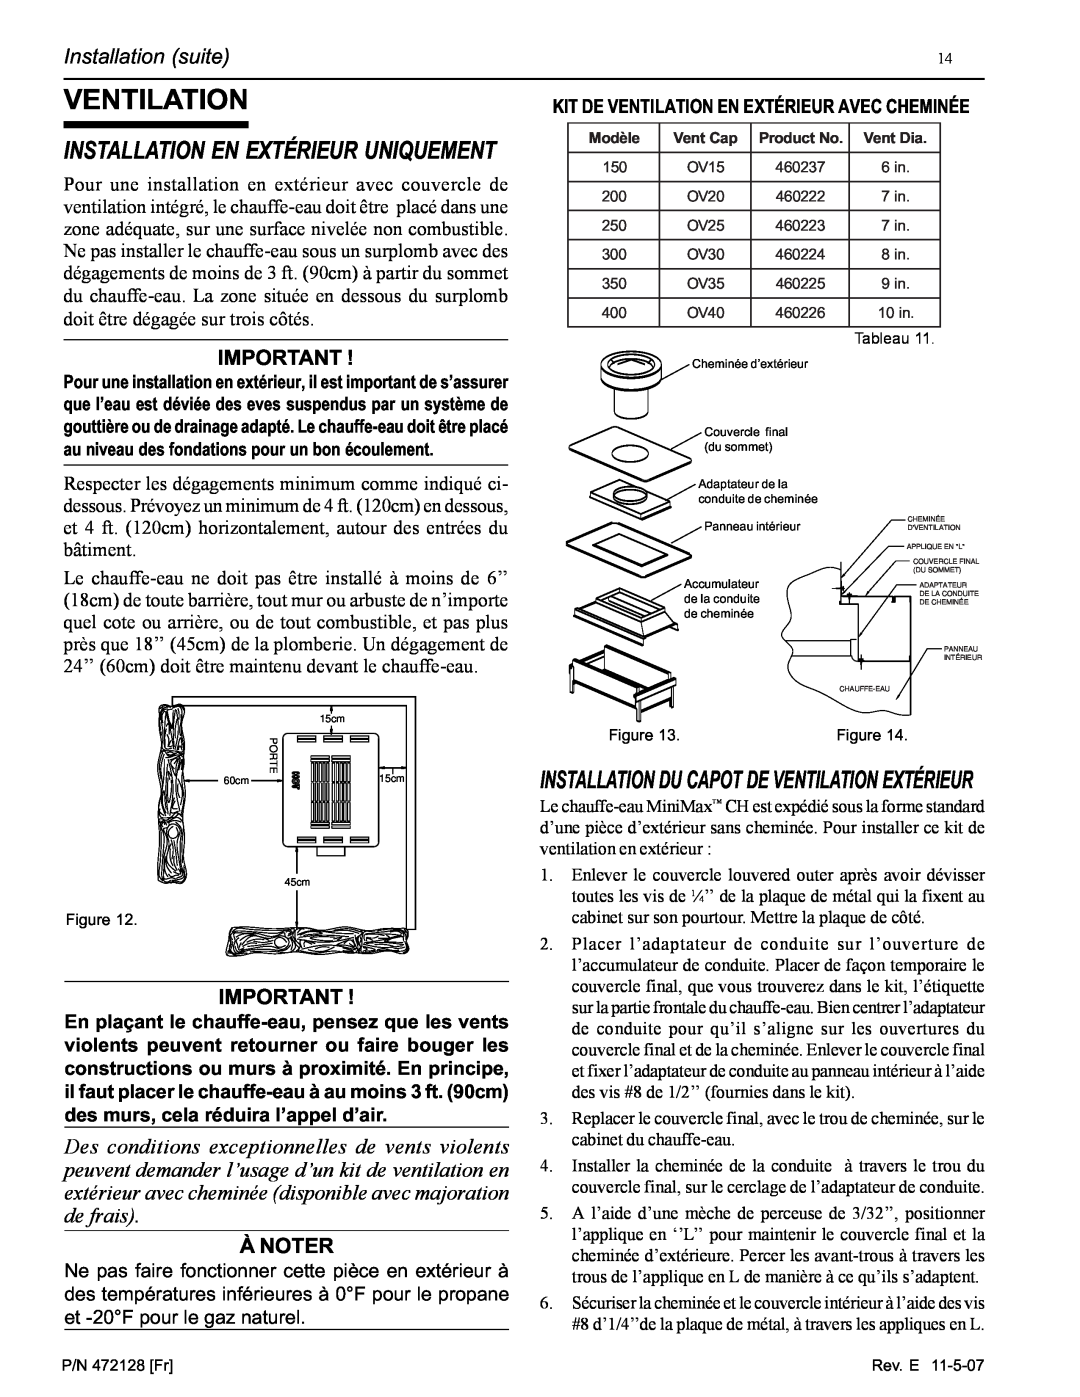 Pentair Hot Tub manual Installation En Extérieur Uniquement, Ventilation, Installation suite, À Noter 